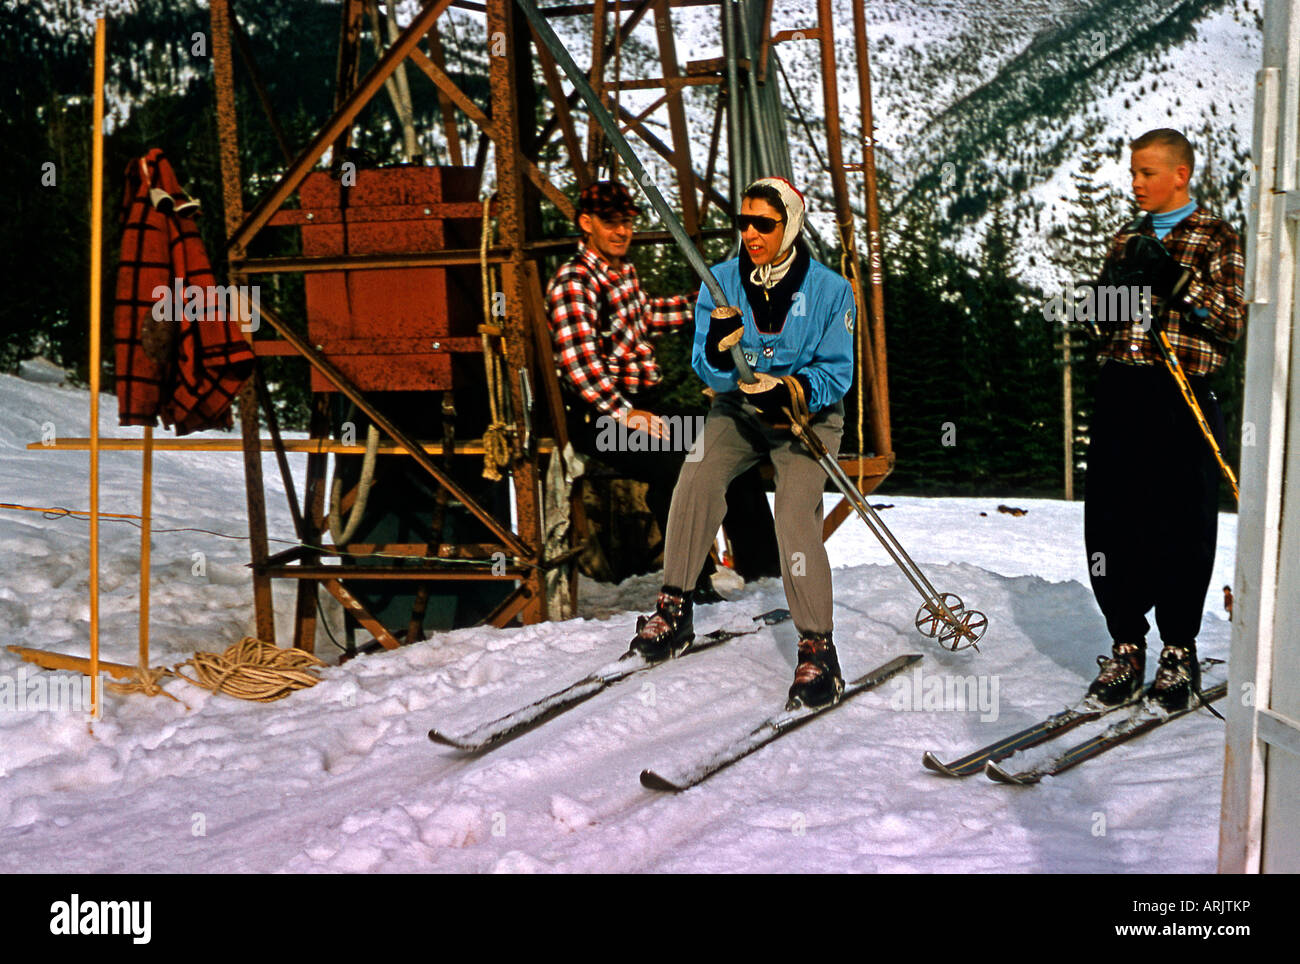 Sciatore inizia la salita su T bar, sci degli anni cinquanta lo stile Lookout Pass, Wallace, Idaho, Montana, USA, c 1956 Foto Stock